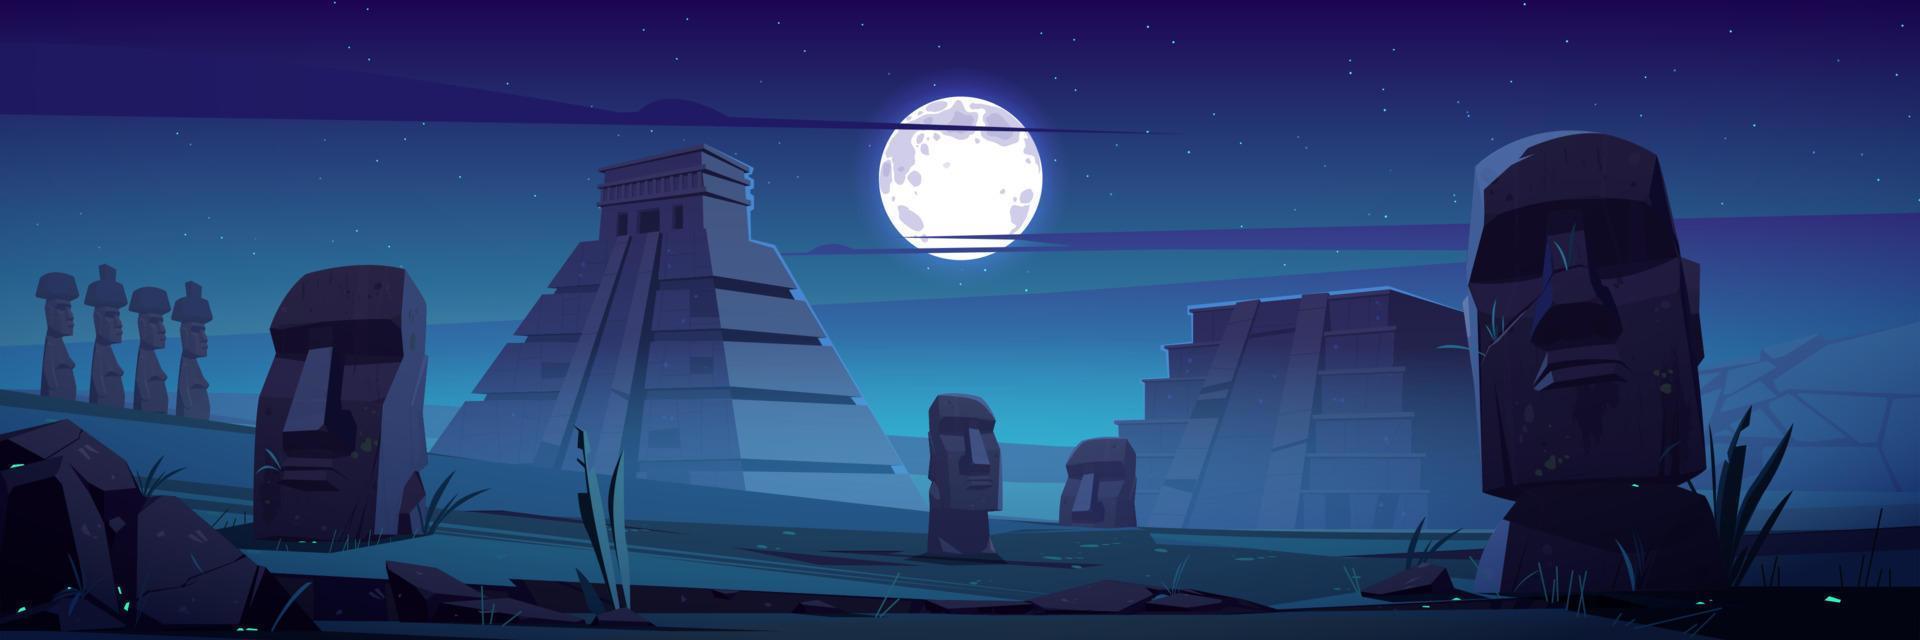 Moai-Statuen und Pyramiden bei Nacht berühmtes Wahrzeichen vektor